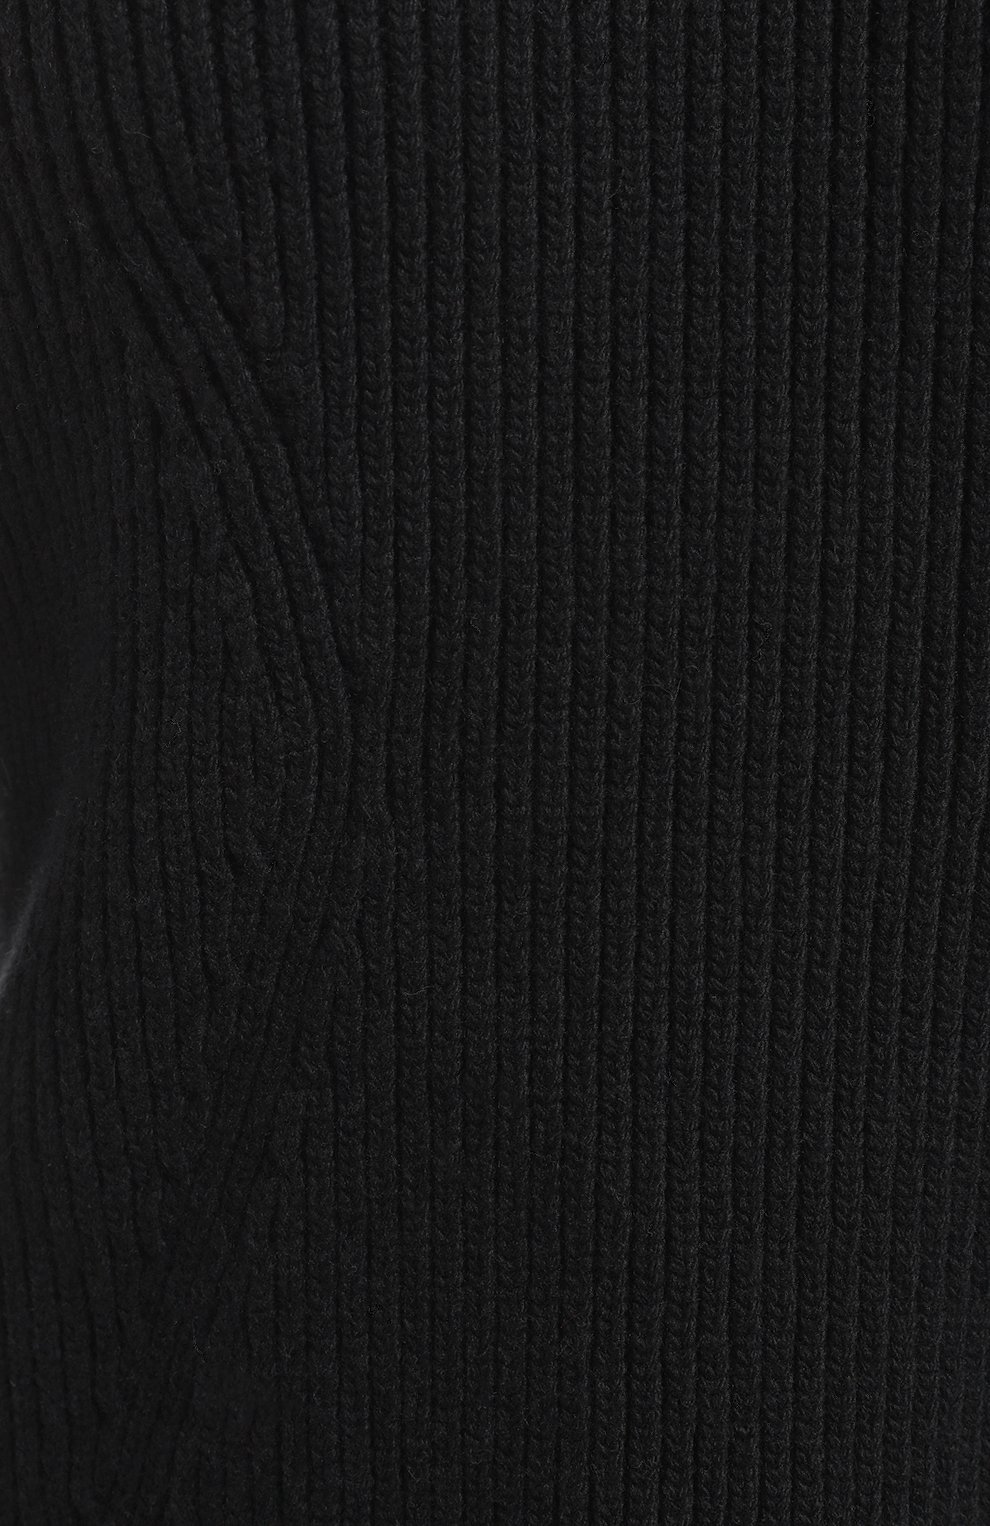 Шерстяной пуловер | Ports 1961 | Чёрный - 3